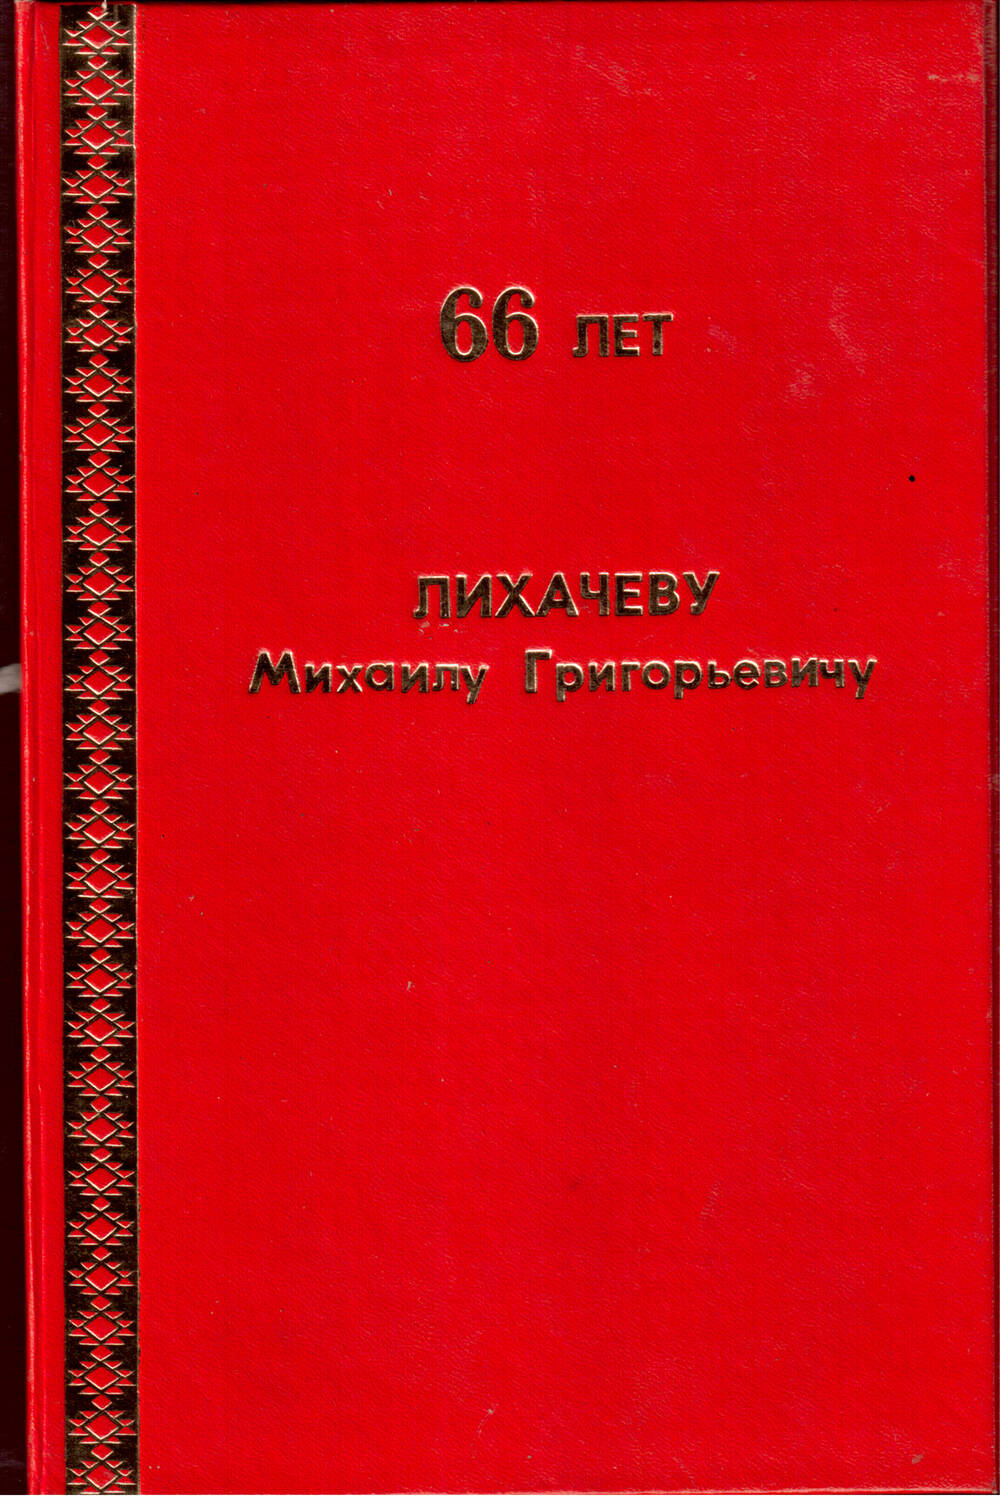 Поздравительная папка с 66-летием Лихачёва Михаила Григорьевича